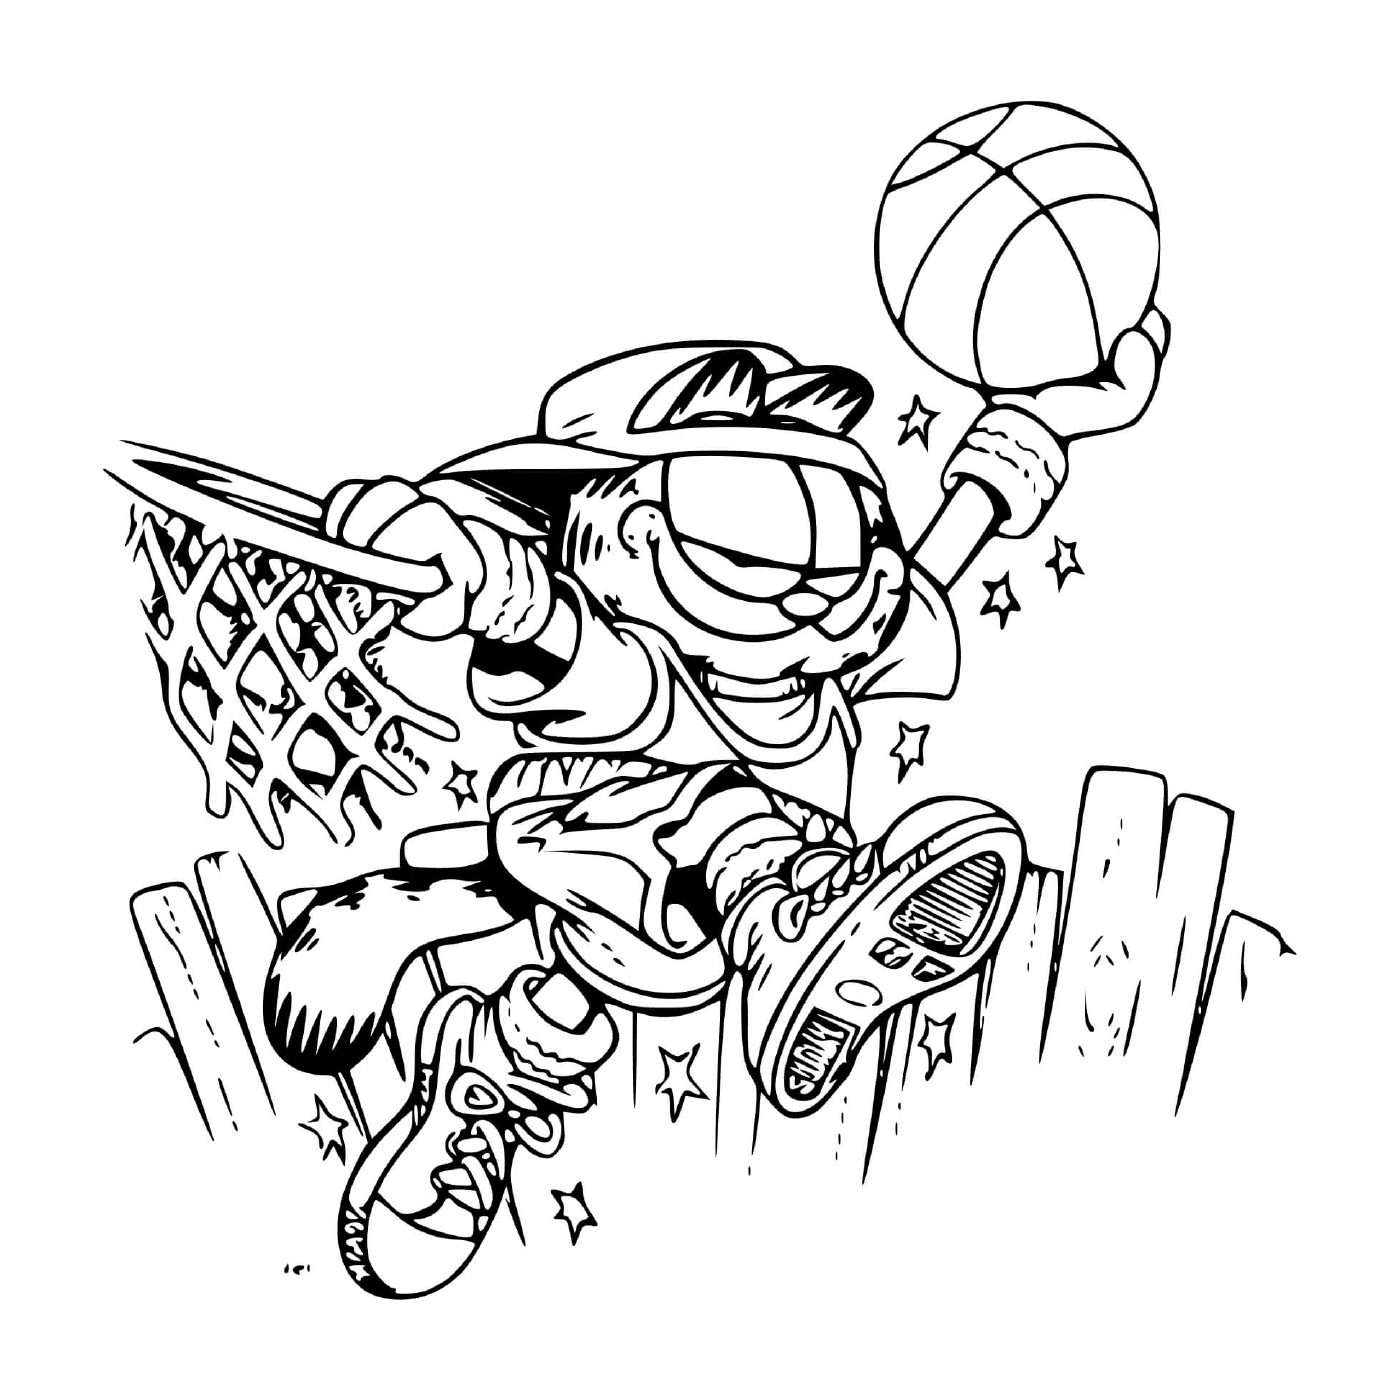  Garfield juega al baloncesto 